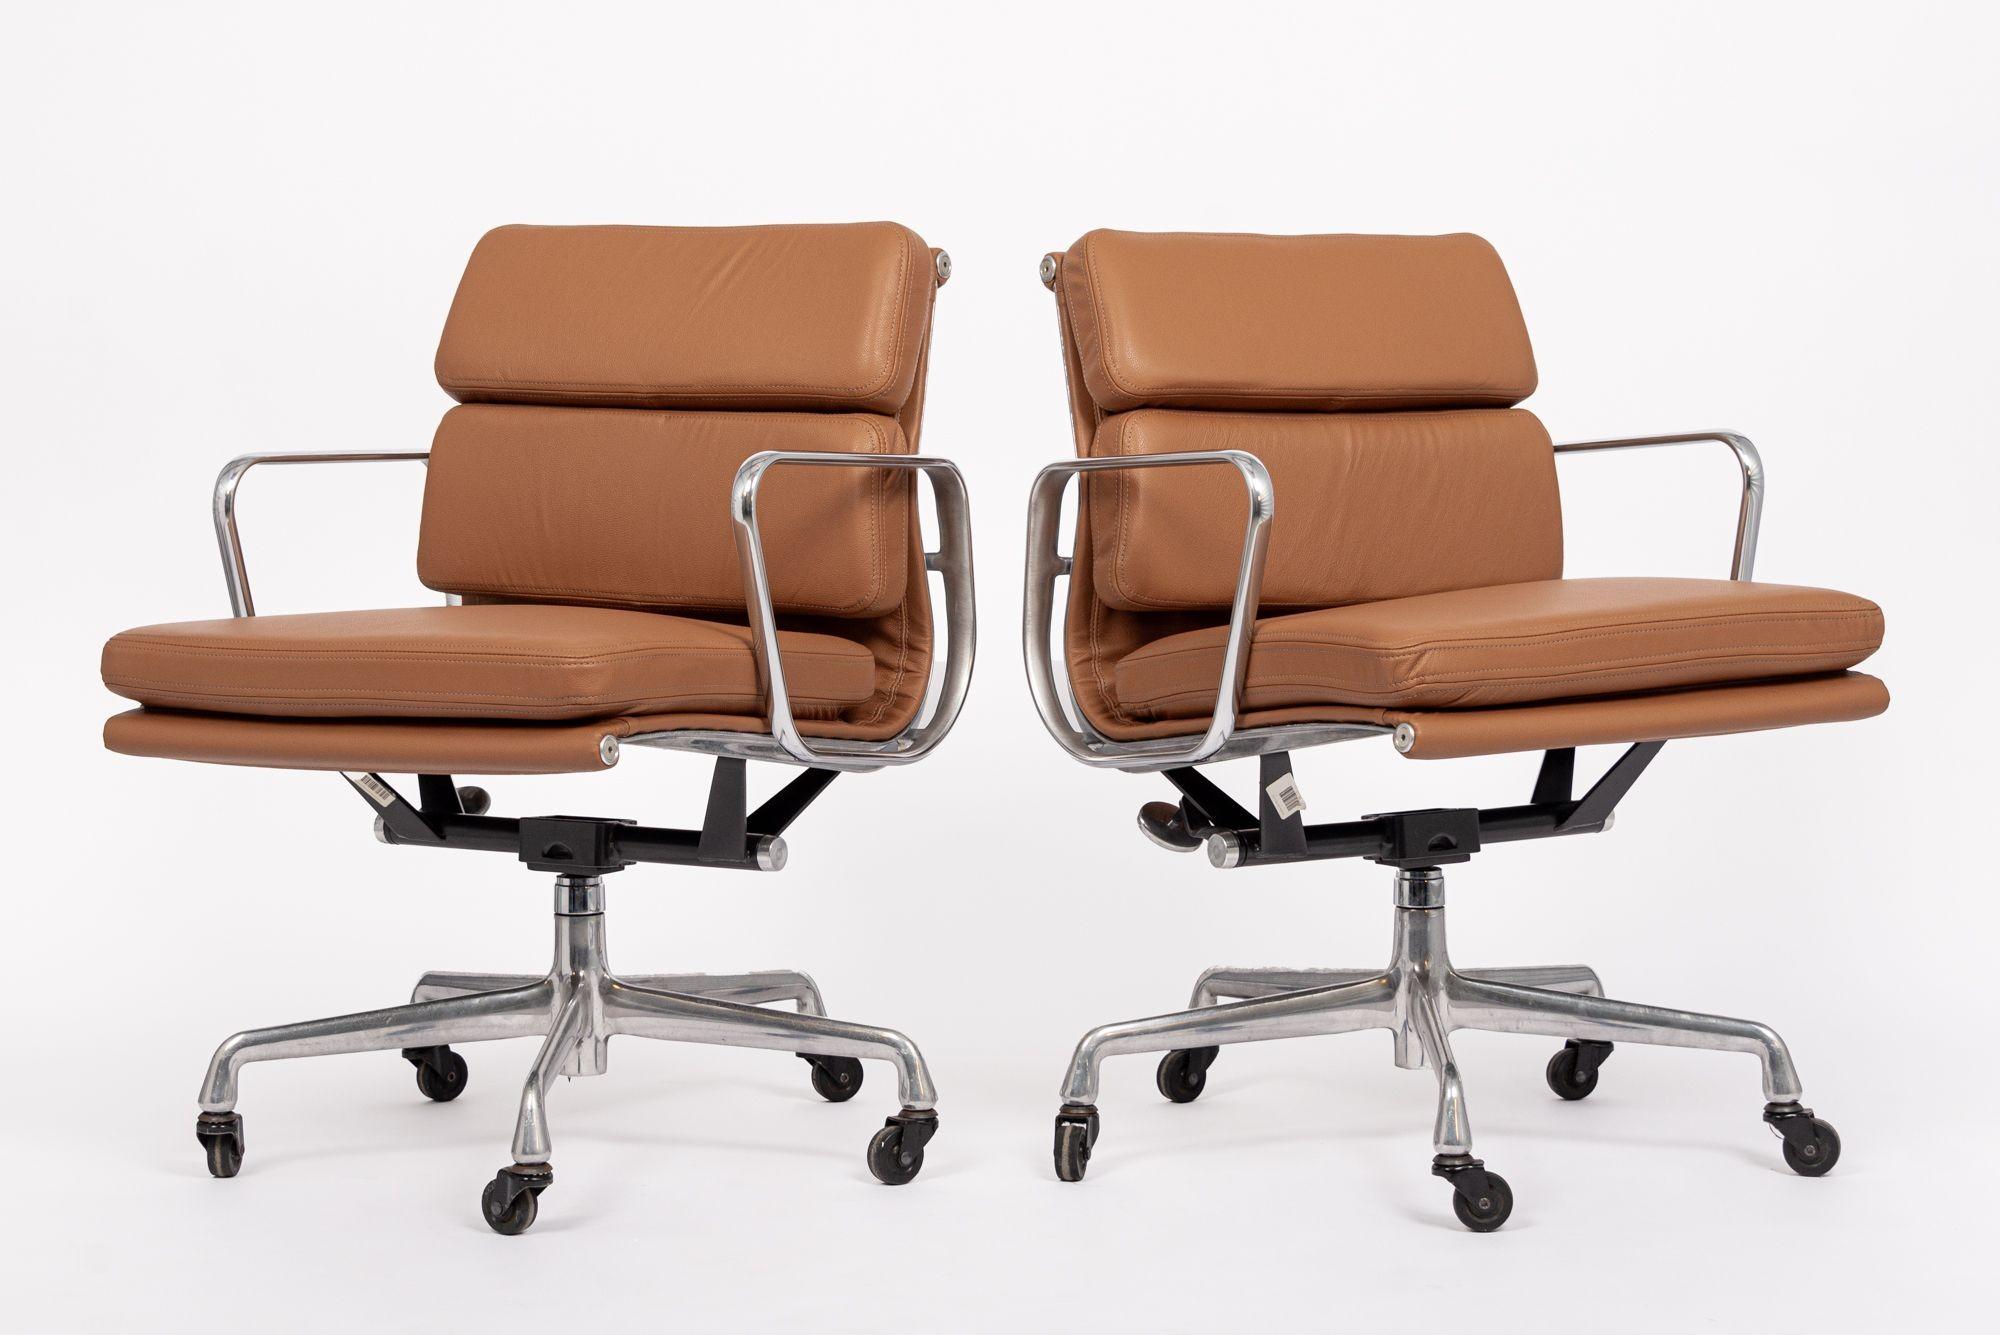 Ces authentiques chaises de bureau Eames for Herman Miller Soft Pad Management Height en cuir marron de la Collection S ont été fabriquées dans les années 2000. Cette chaise de bureau classique et moderne du milieu du siècle a été introduite pour la